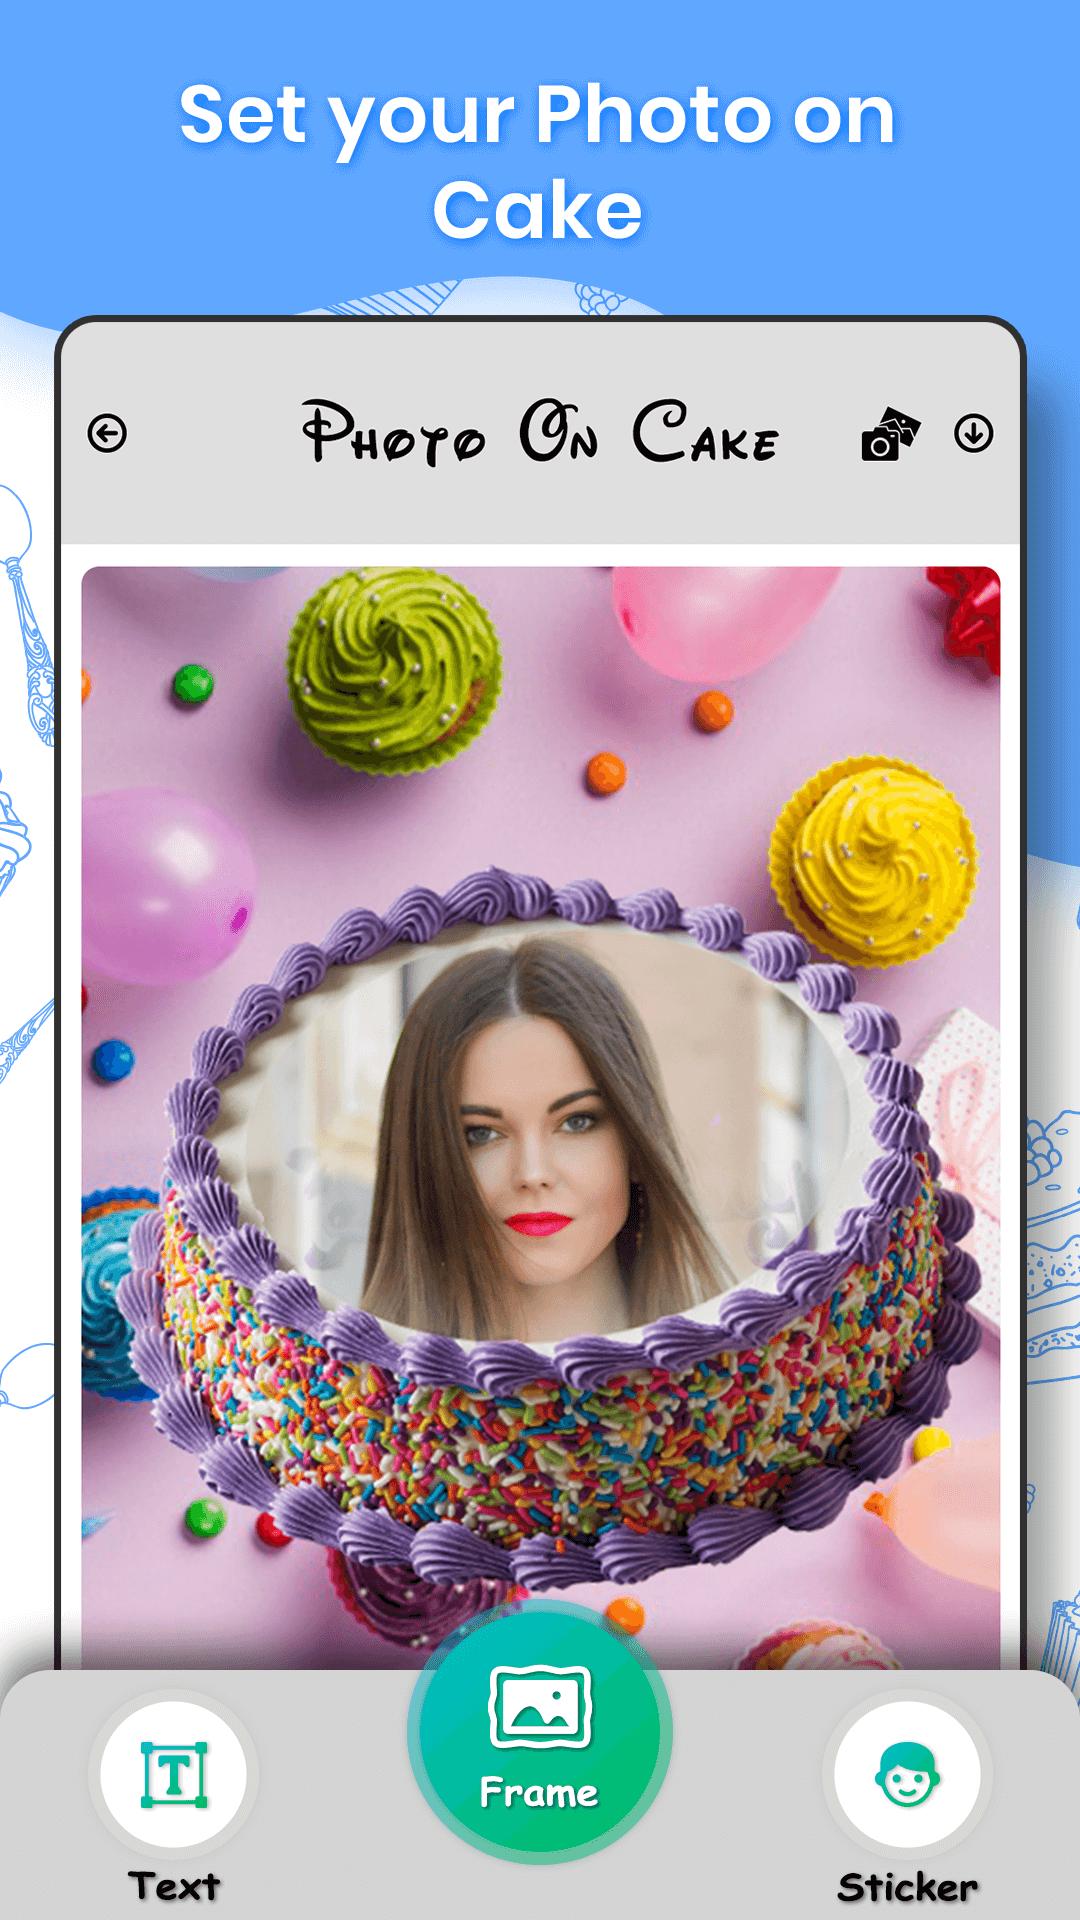 Name and photo on cake 1.0.1 Screenshot 3